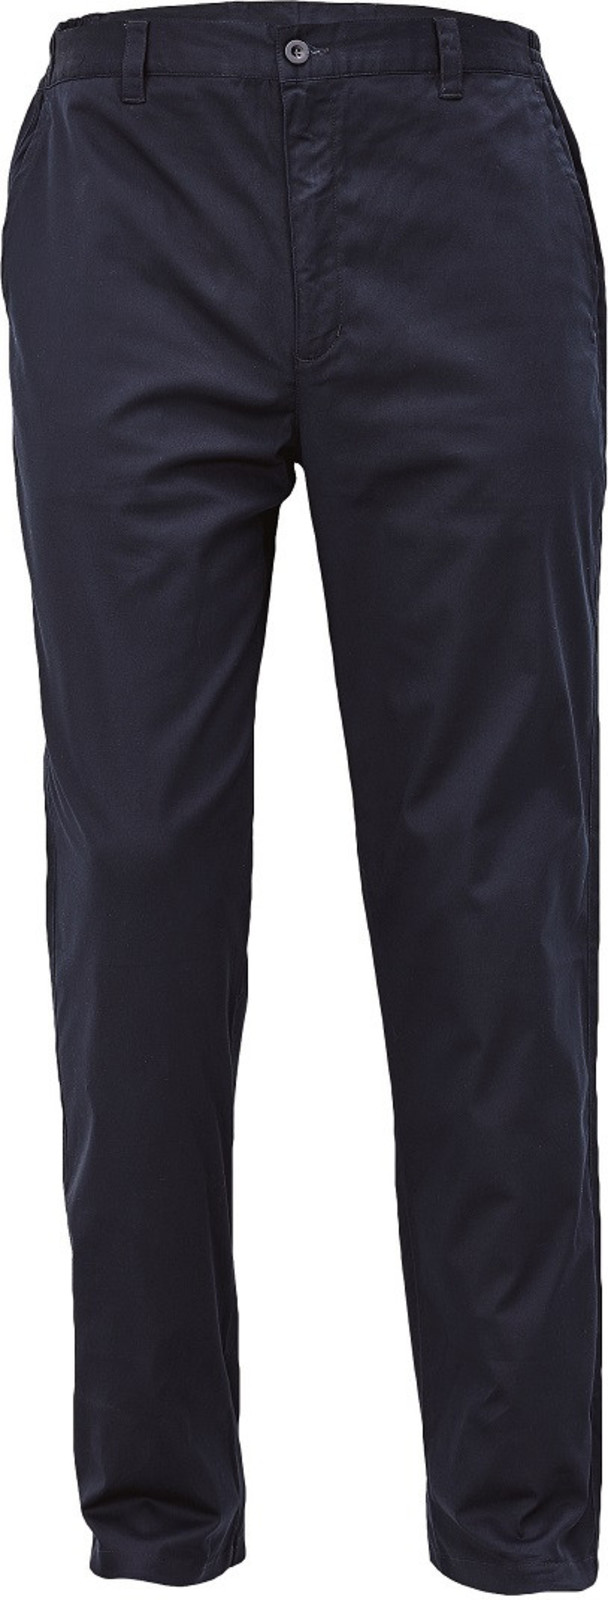 Voľnočasové nohavice Lagan pánske - veľkosť: 60, farba: navy